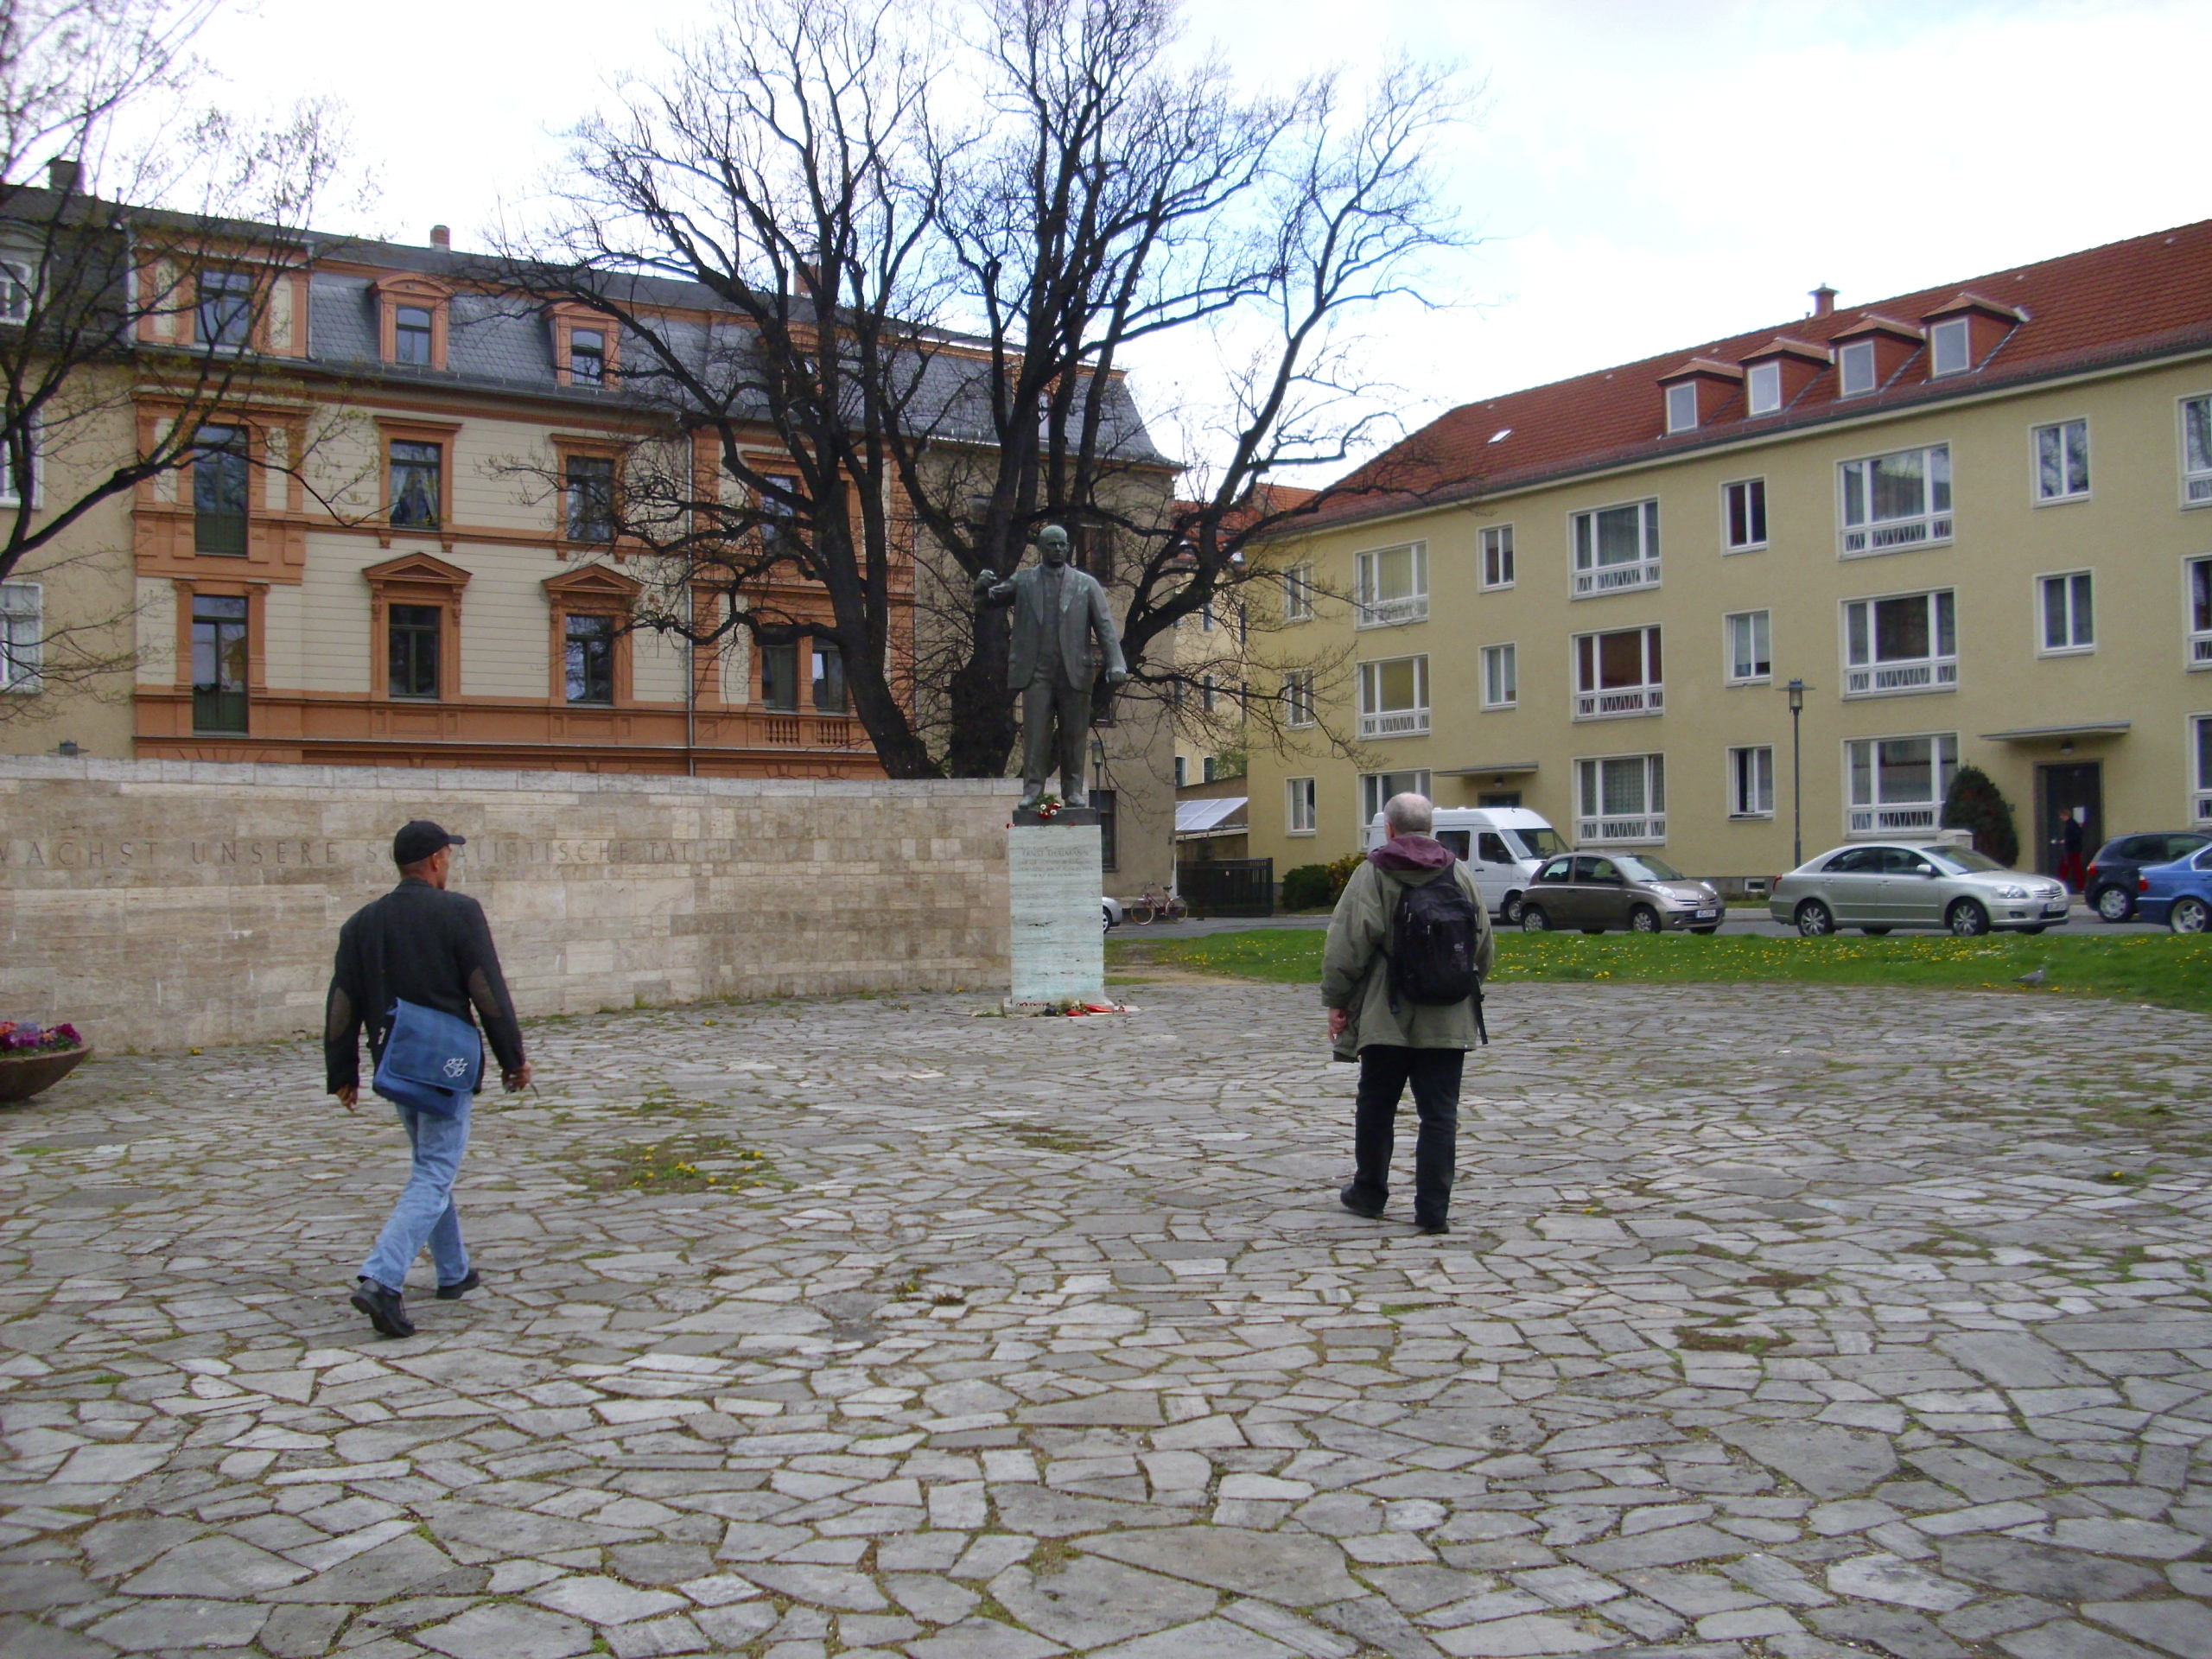 Farbfoto: Ralph Ivert und Erwin Thomasius vor dem Denkmal für Ernst Thälmann in Weimar im Jahre 2012. Fotograf: Bernd Paepcke.